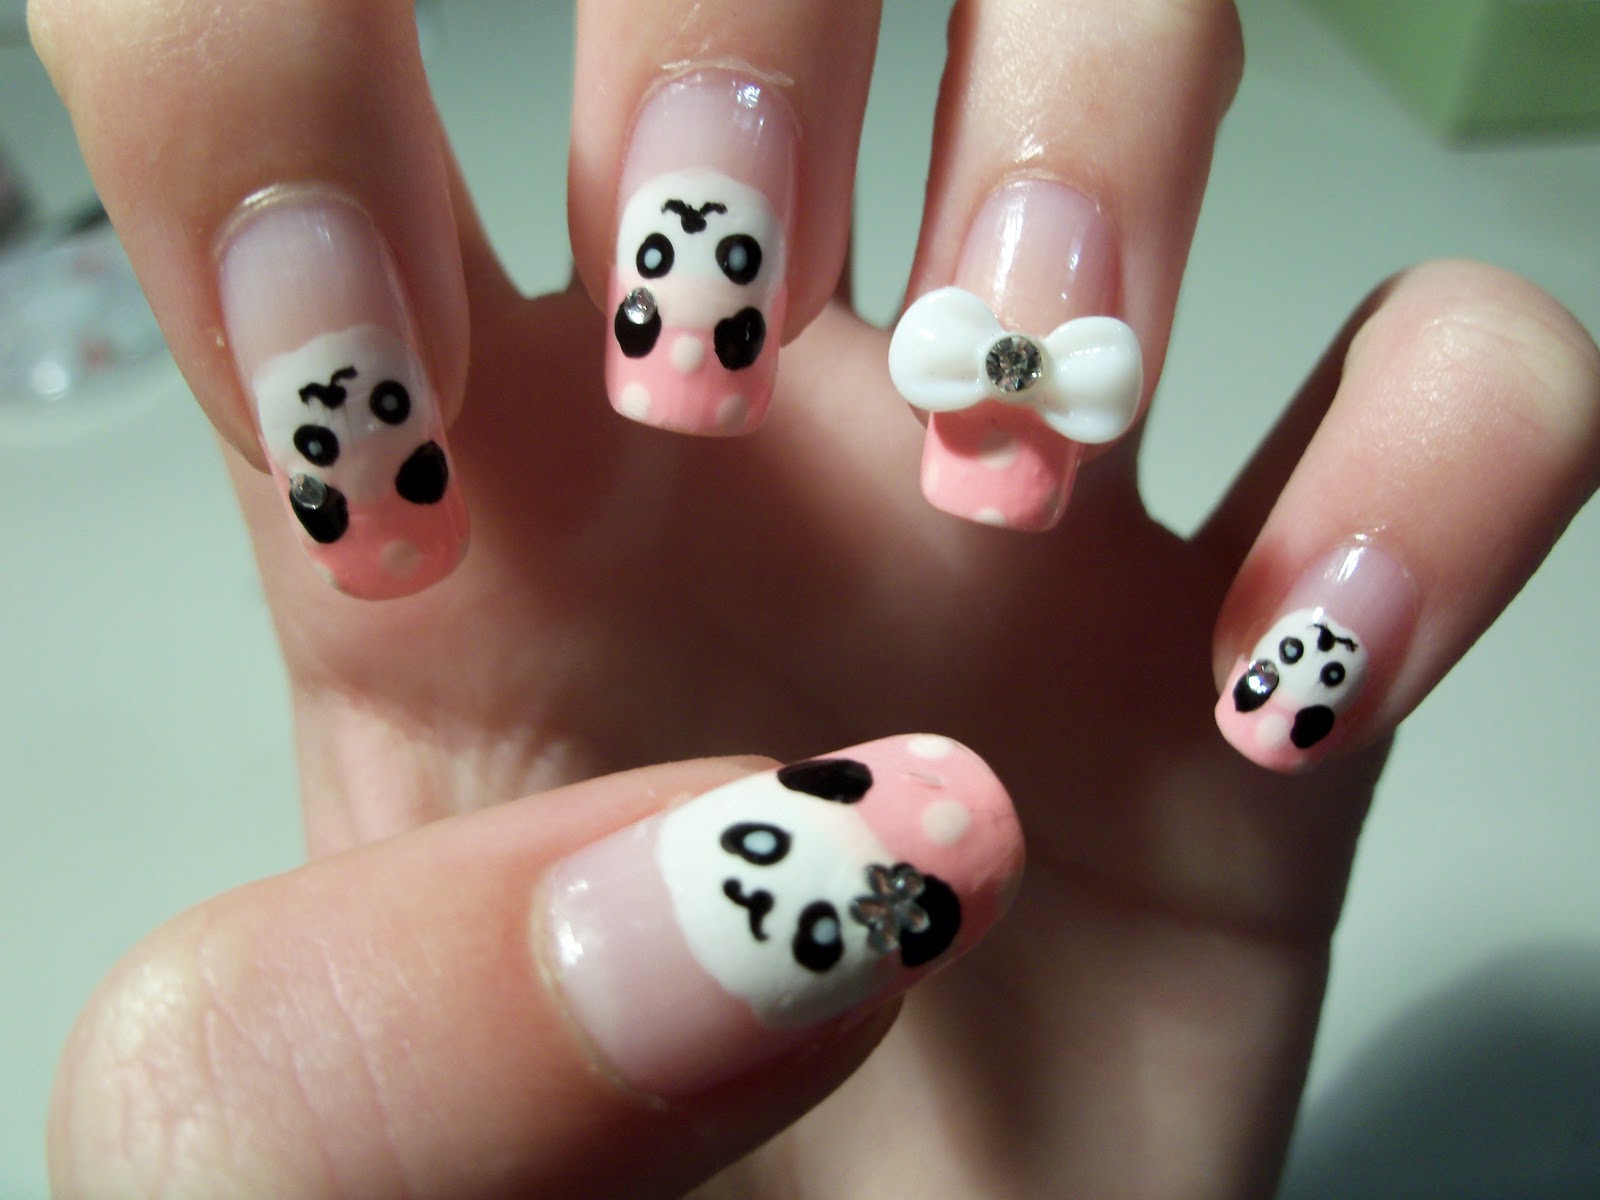 3. Panda Nail Designs for Short Nails - wide 1